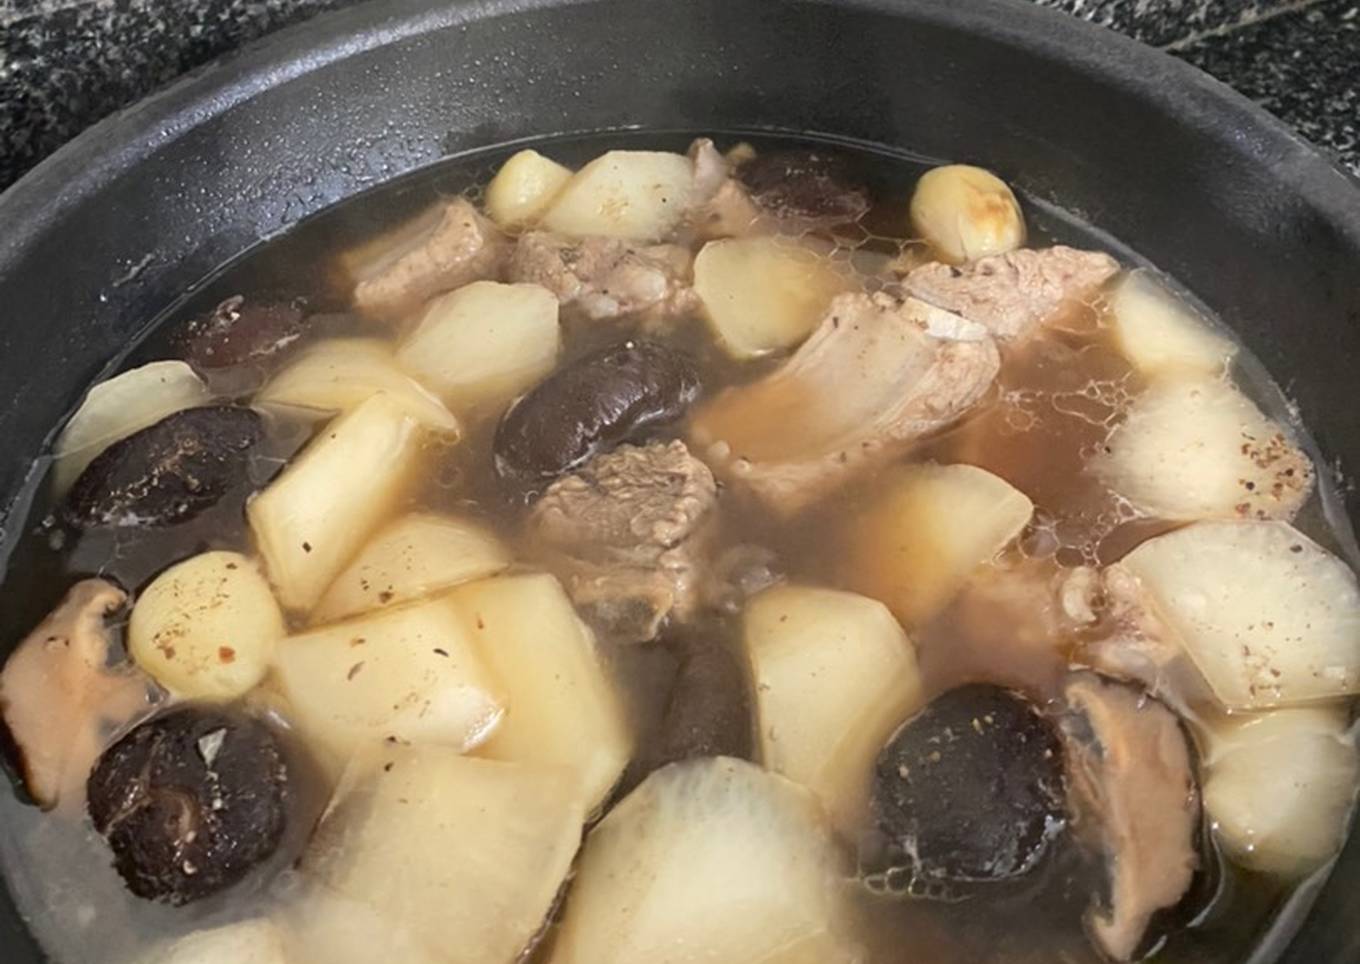 pork rib soup with daikon